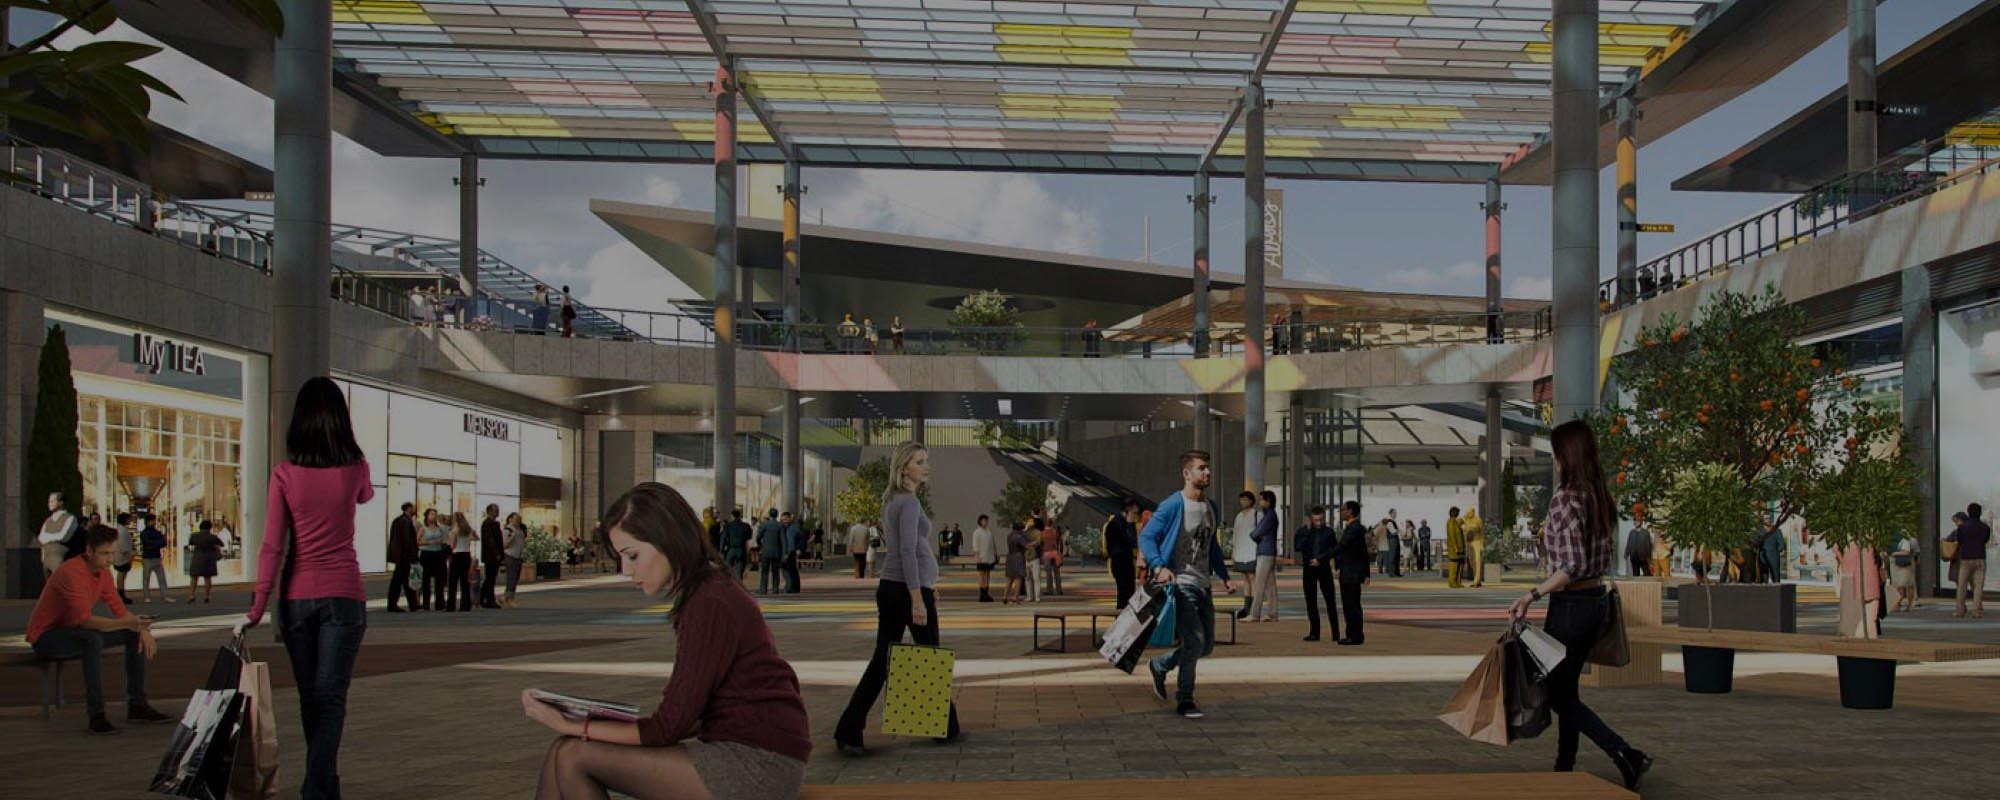 Visualización 3D de un centro comercial en Canarias